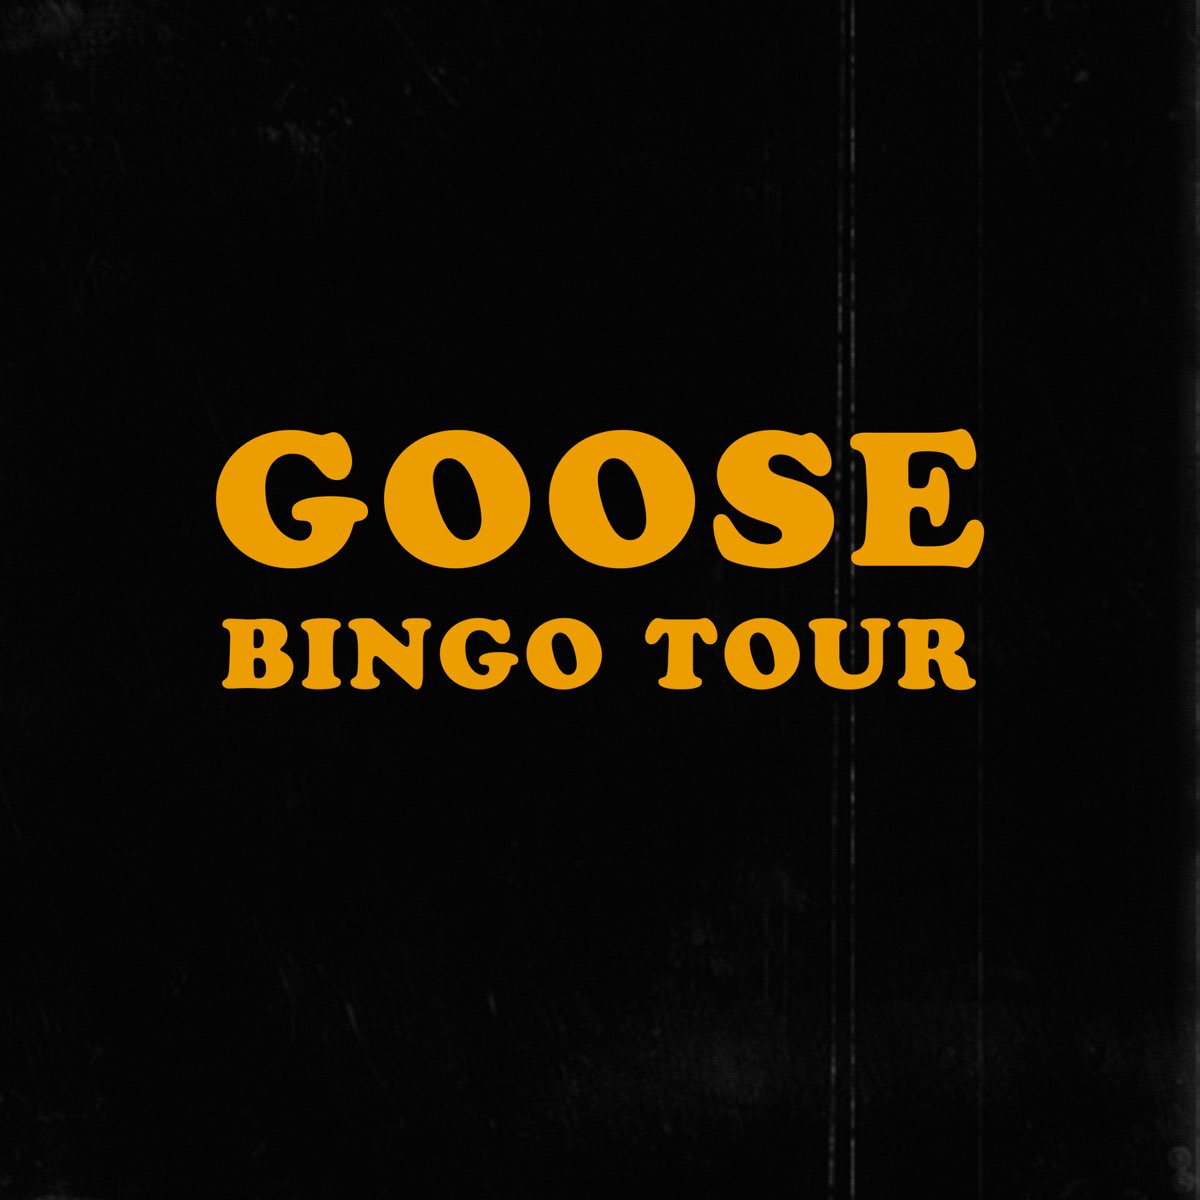 bingo tour goose